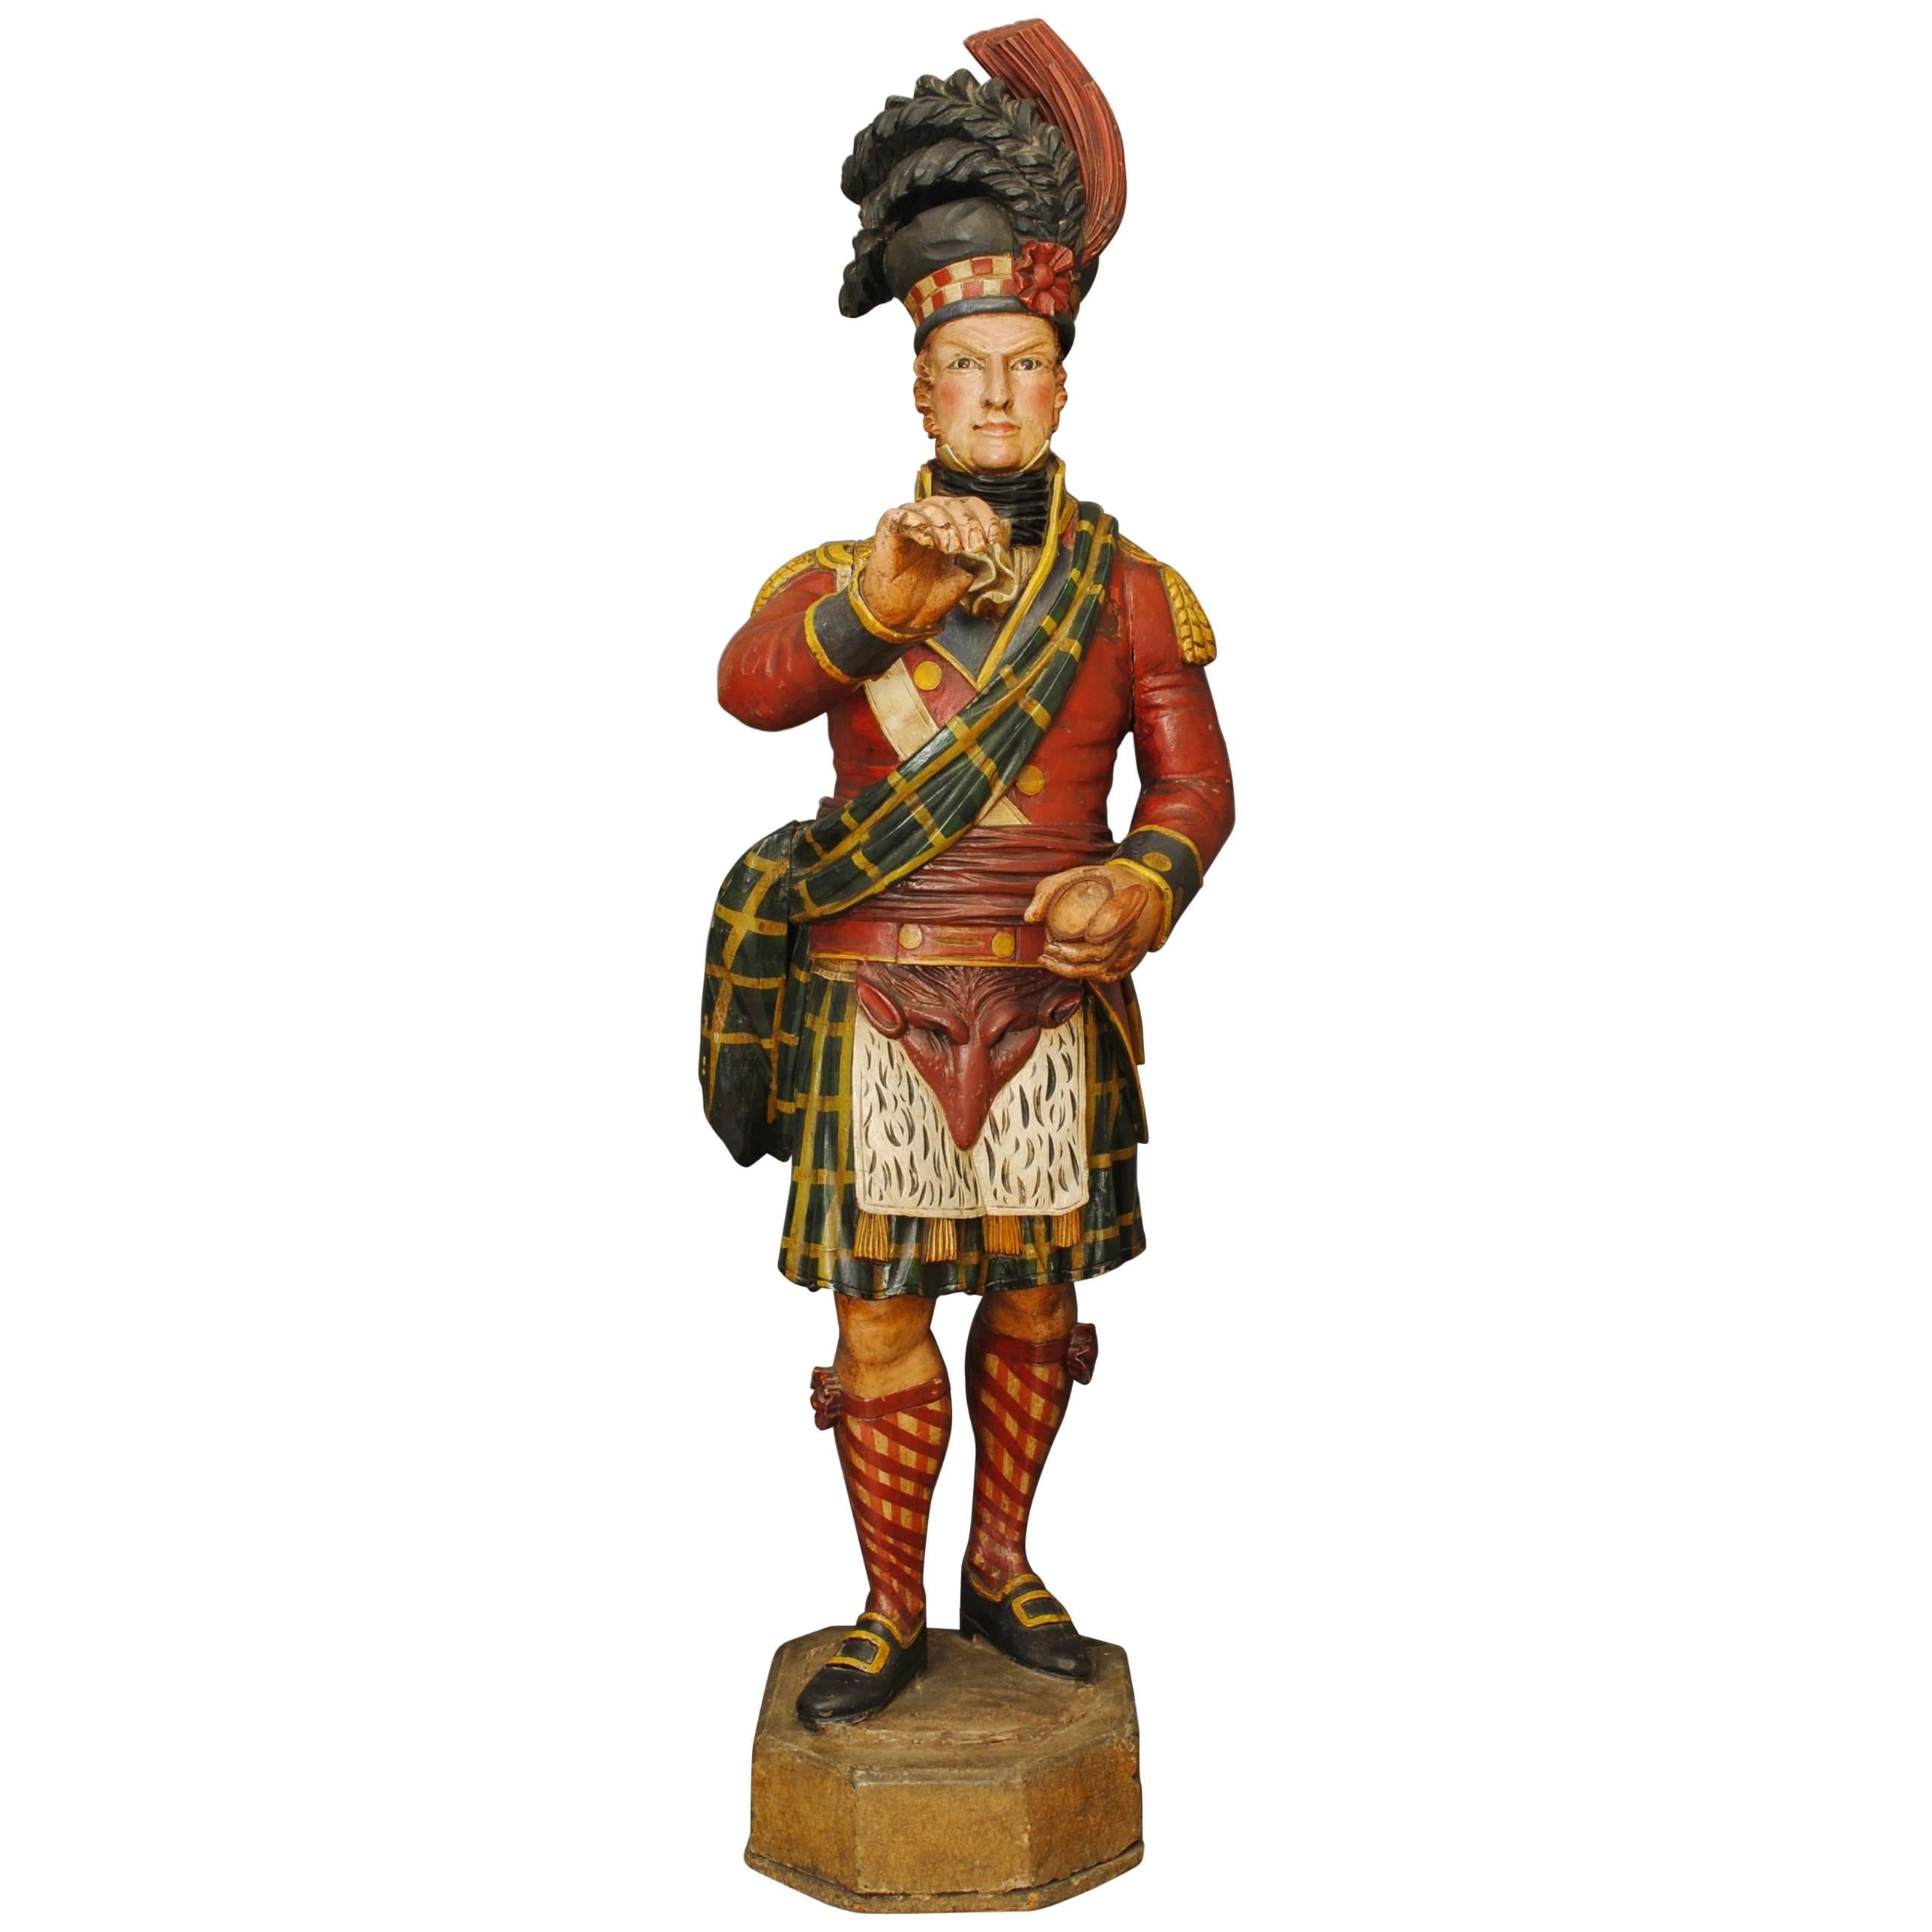 Superb Carved Wooden and Polychromed Tobacconists Figure of a Highlander